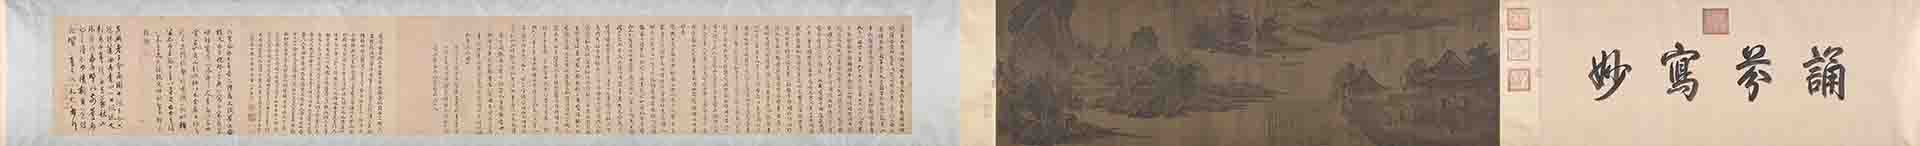 北宋 张先 十咏图 (全卷)绢本52x125.4